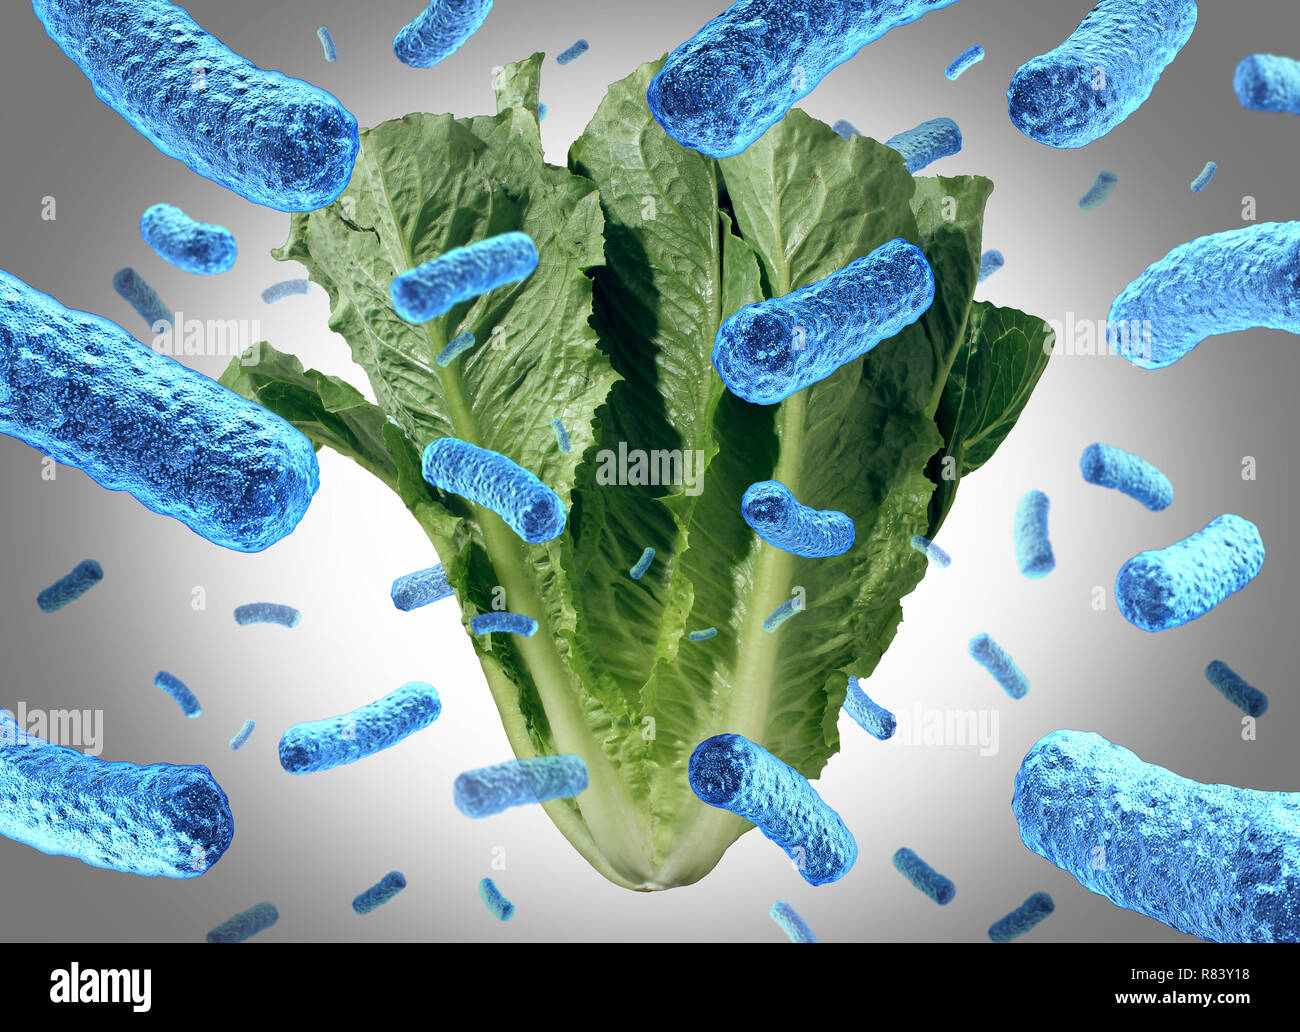 Laitue romaine e coli intoxication alimentaire comme un légume ou de bactéries de contamination Le risque pour la santé publique dans une salade avec 3D illustration éléments. Banque D'Images